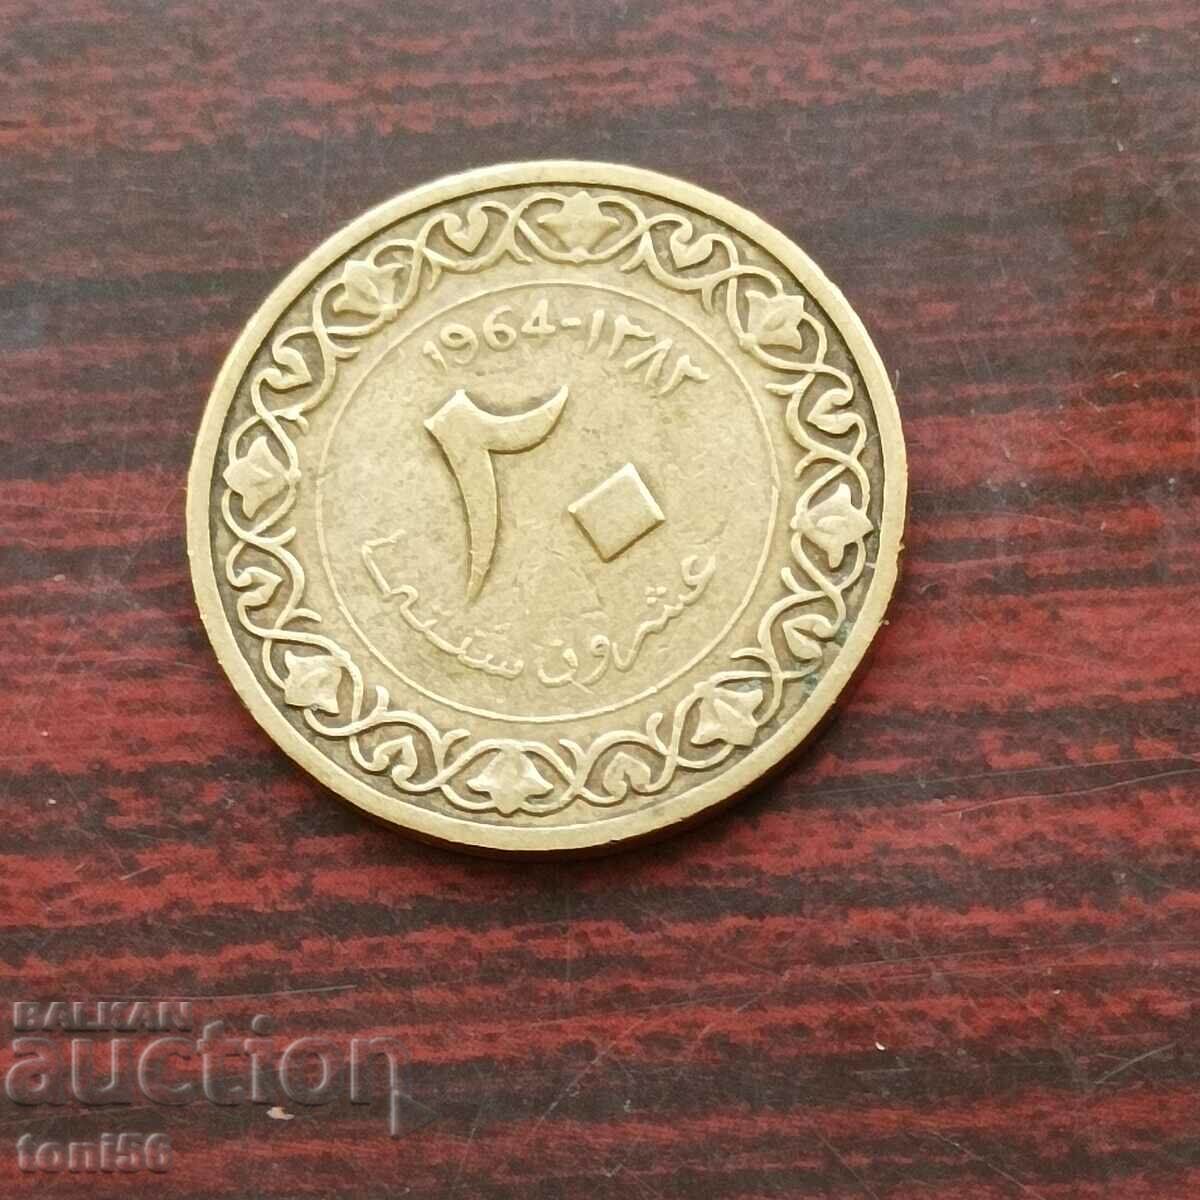 Algeria 20 centimes 1964